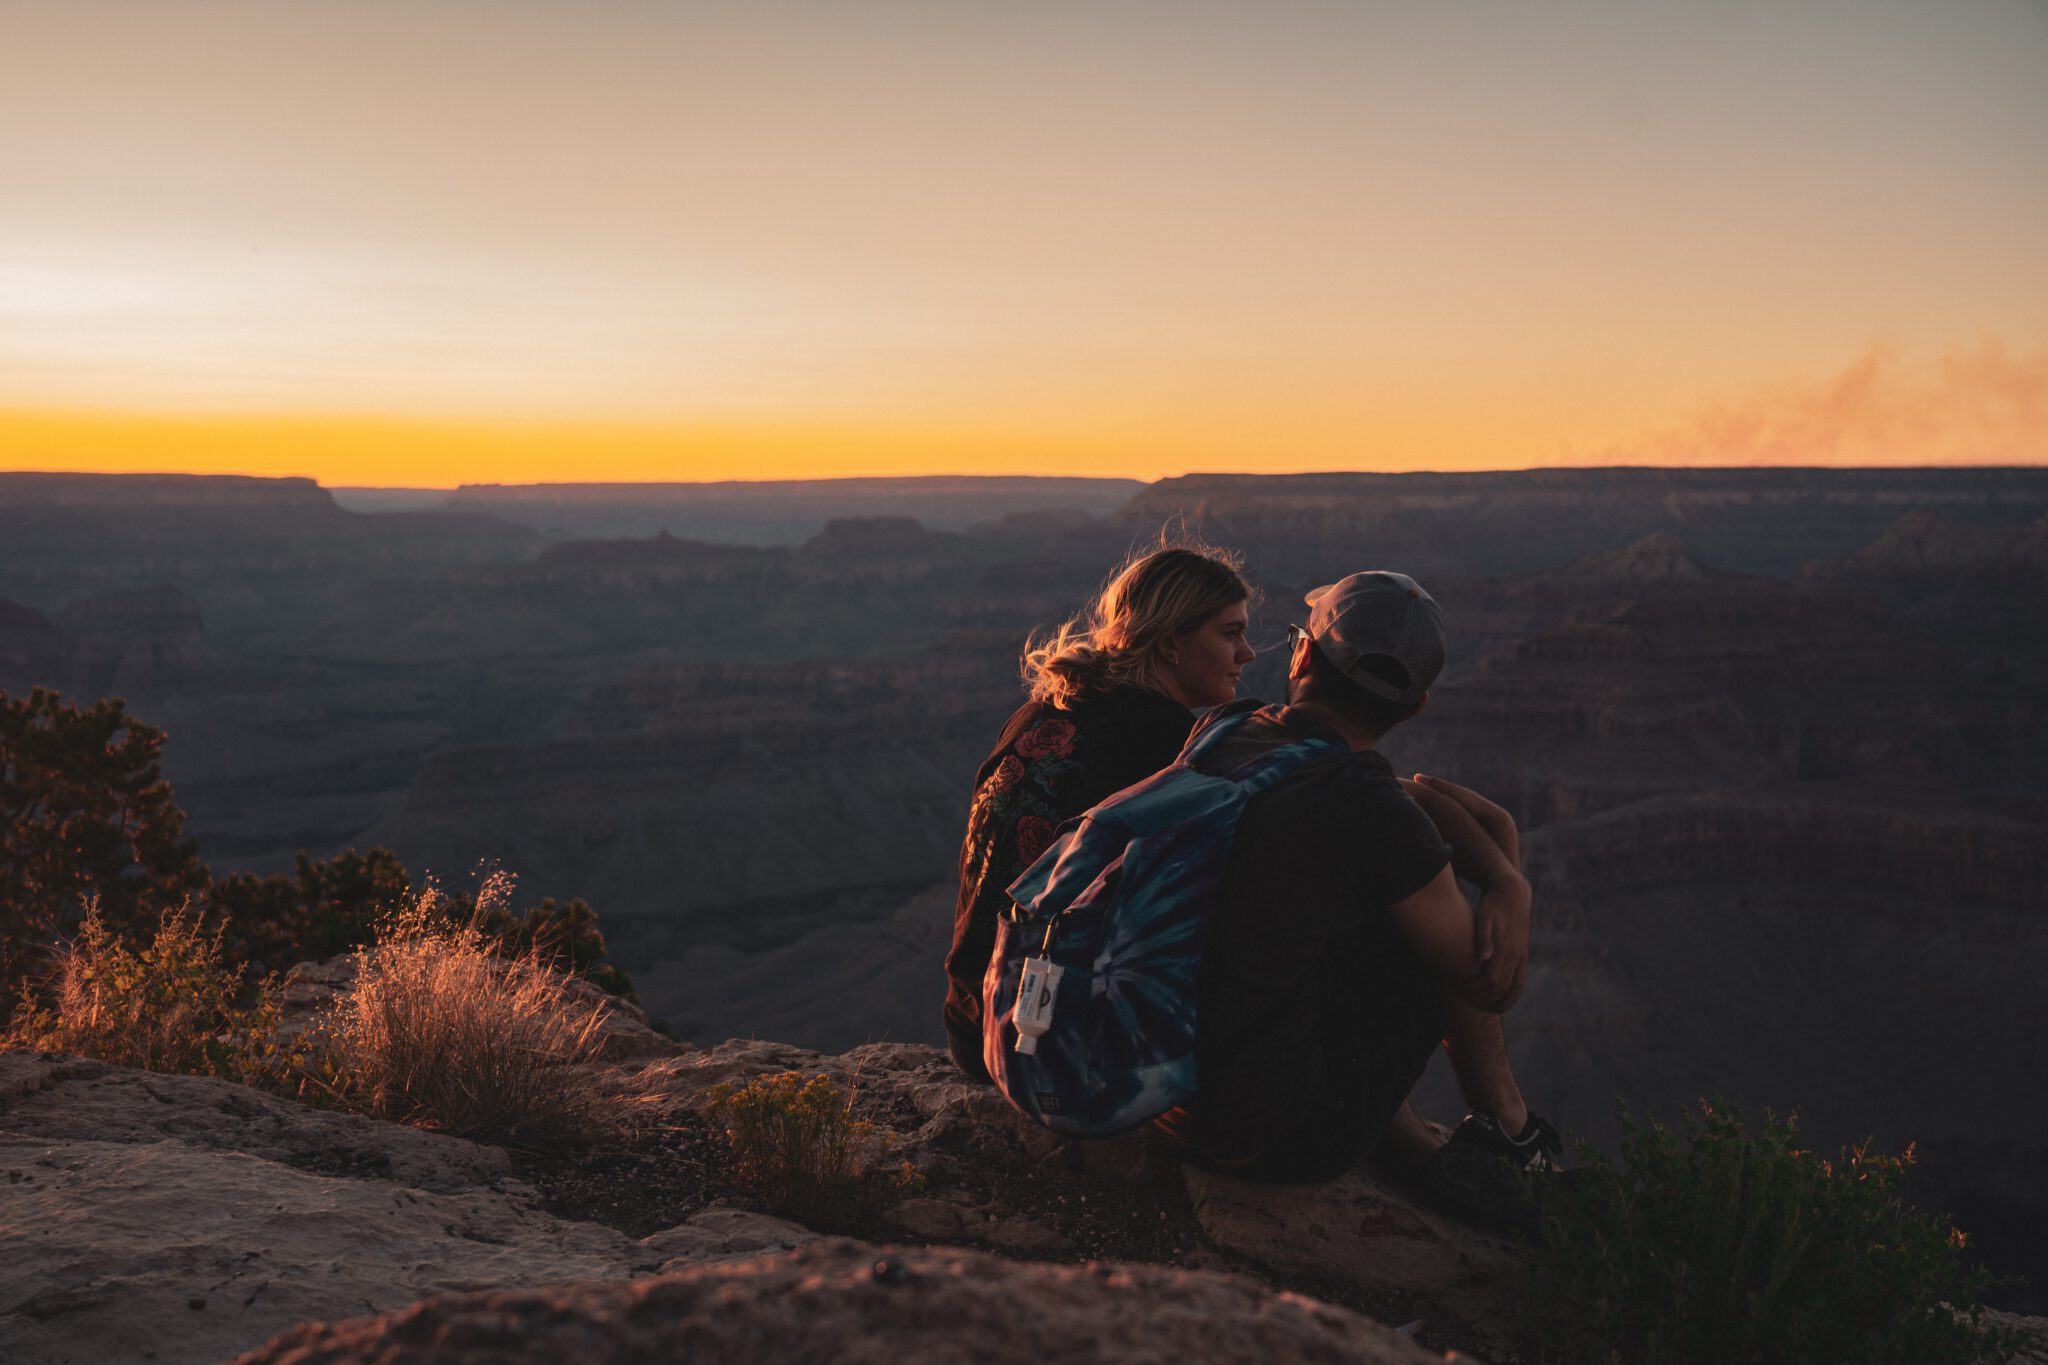 Te hoge verwachtingen relatie, stel zit op een rots te kijken naar de zonsondergang